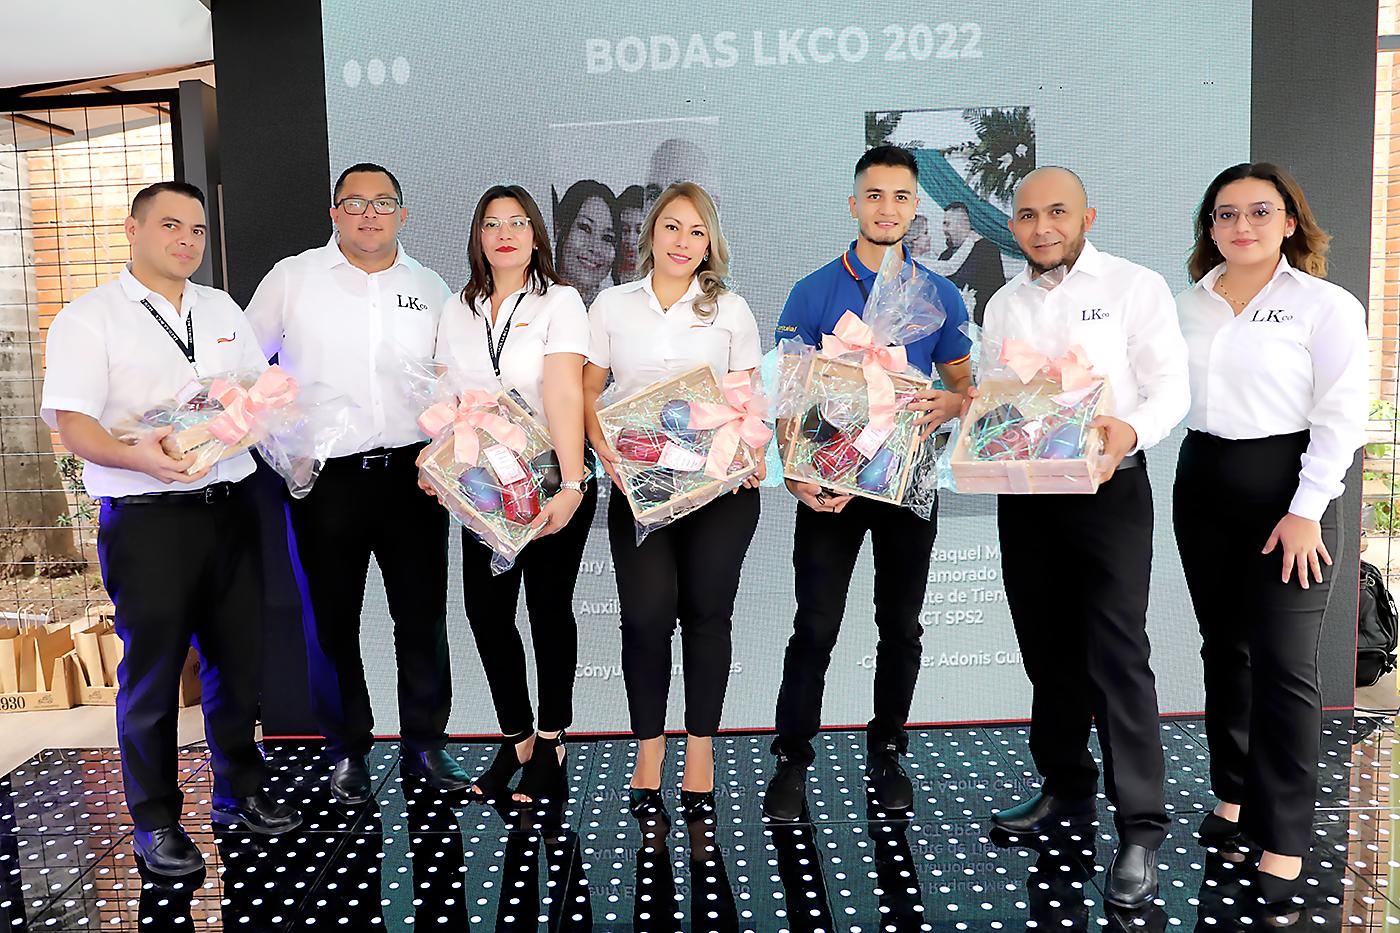 LKCO y CORTITELAS presentan primera edición de los premios LK